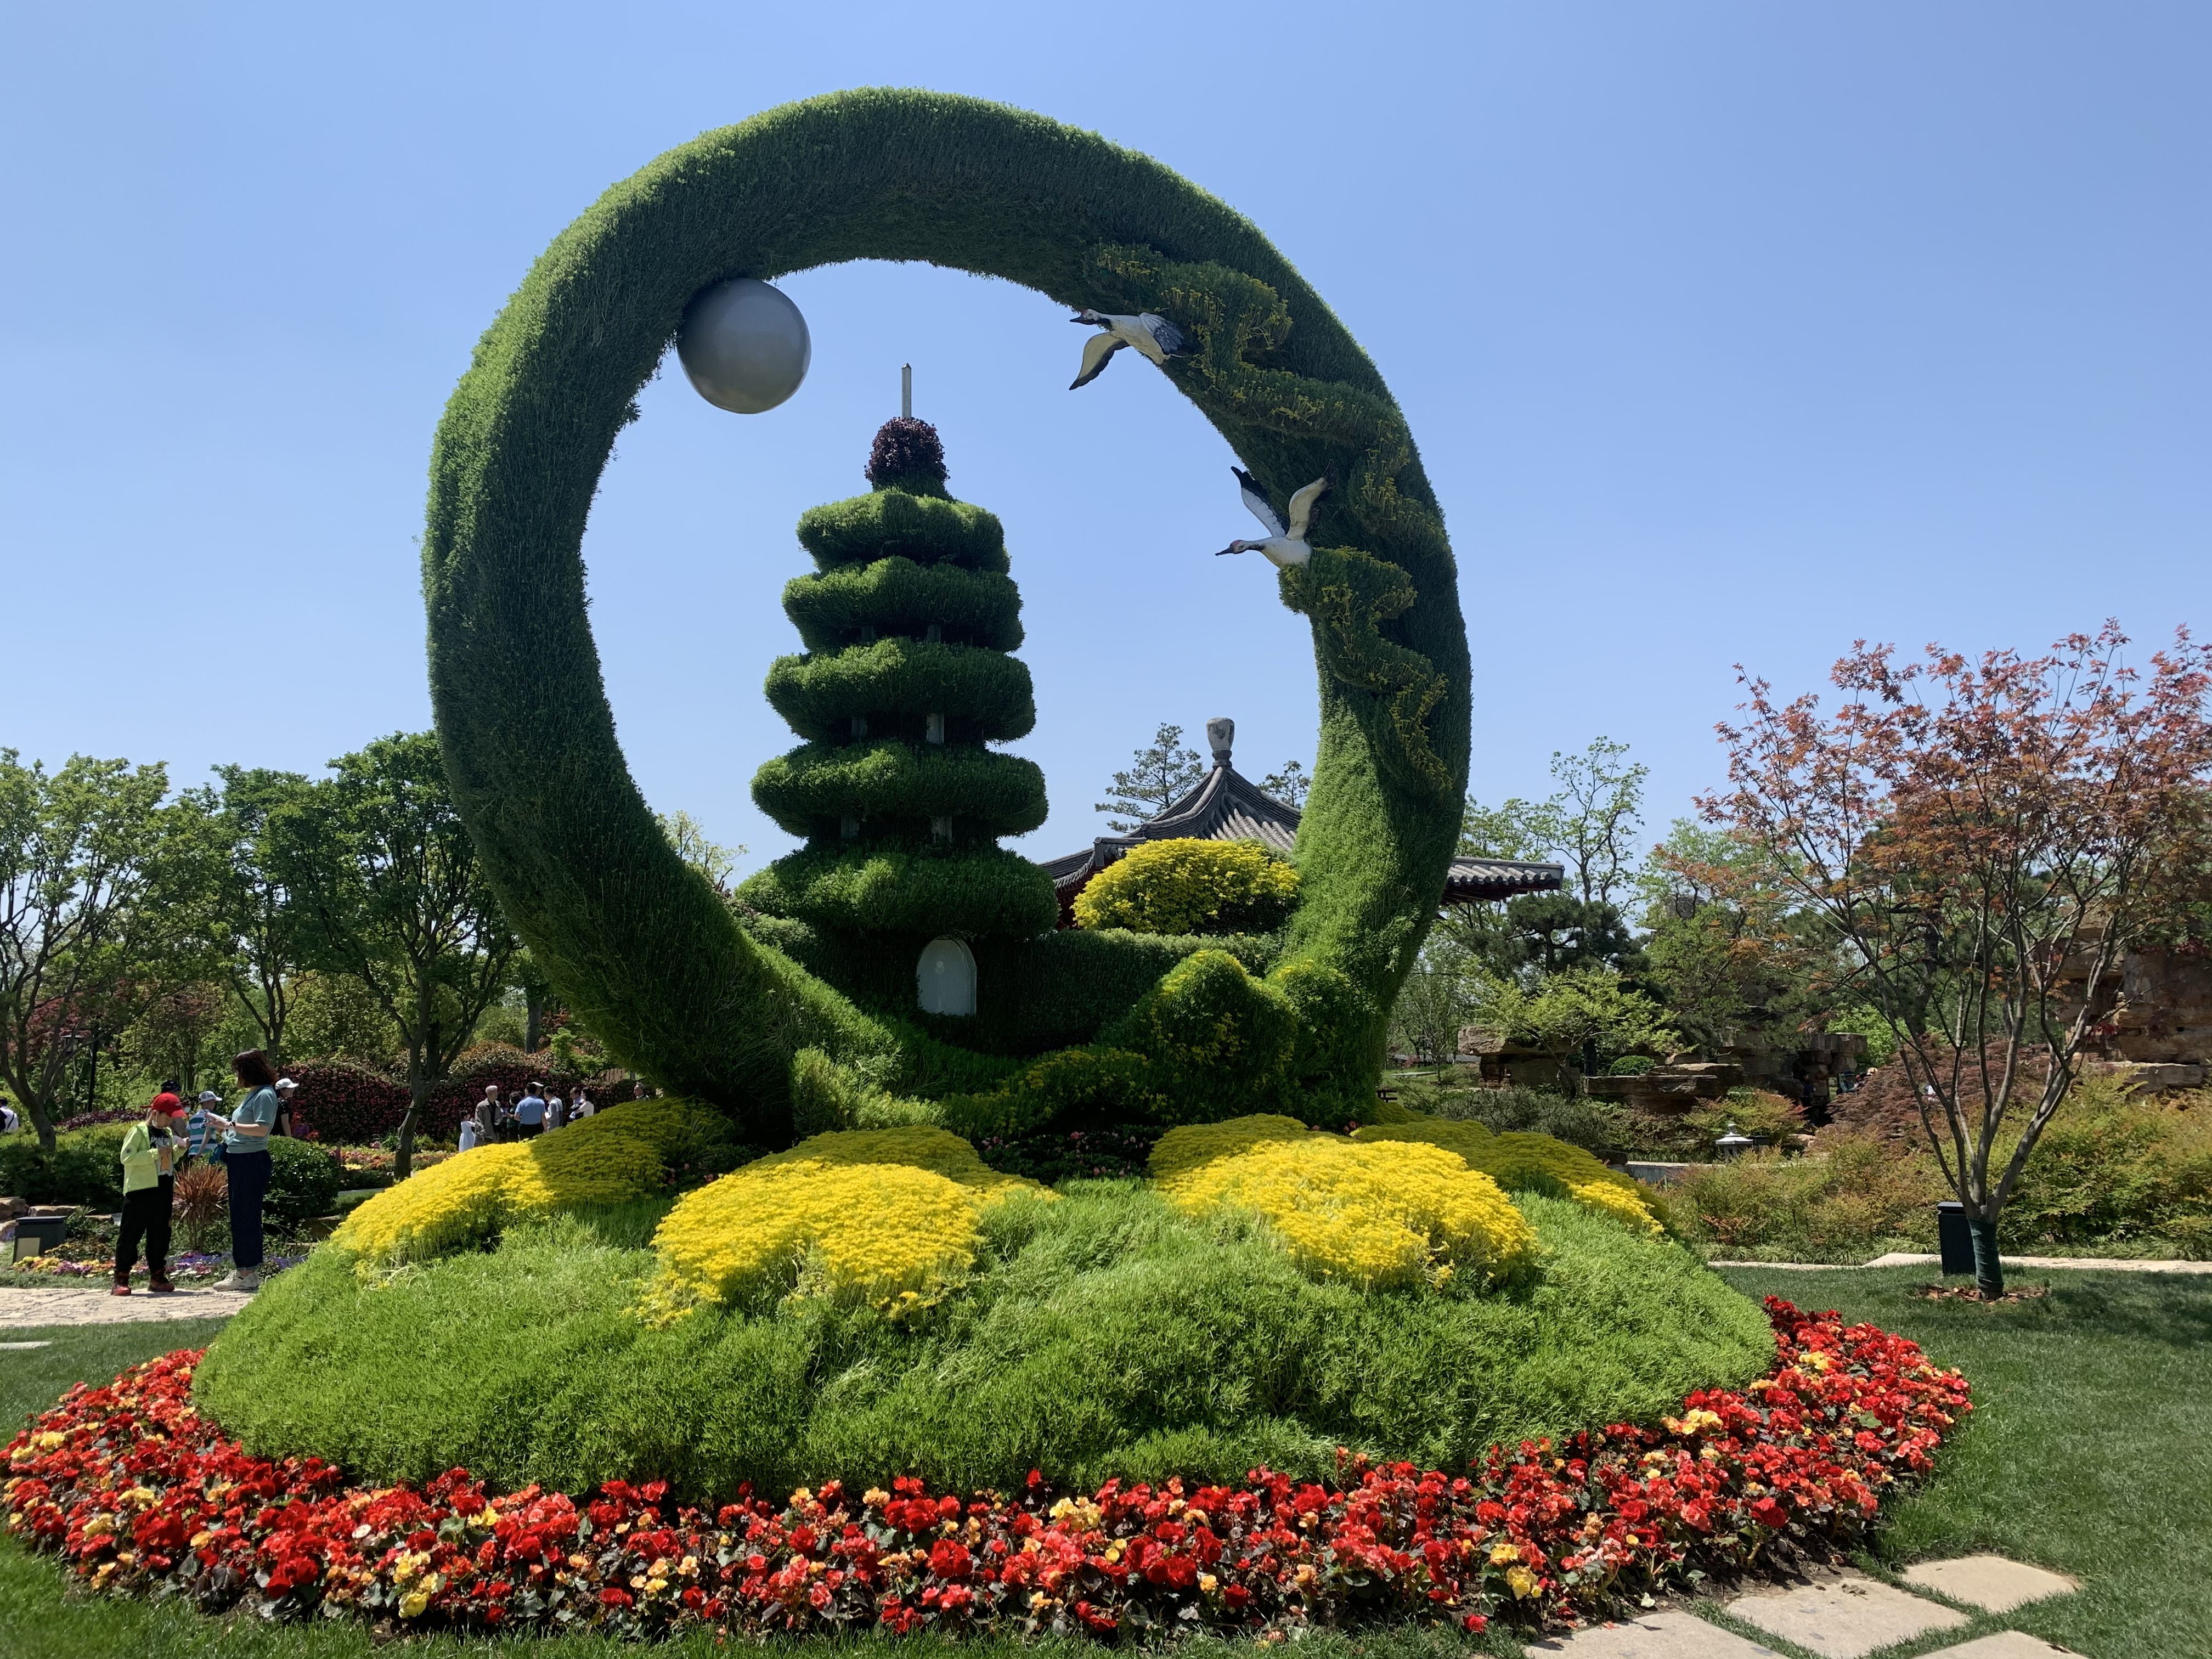 五一长假好去处,2021扬州世园会感受世界园艺魅力